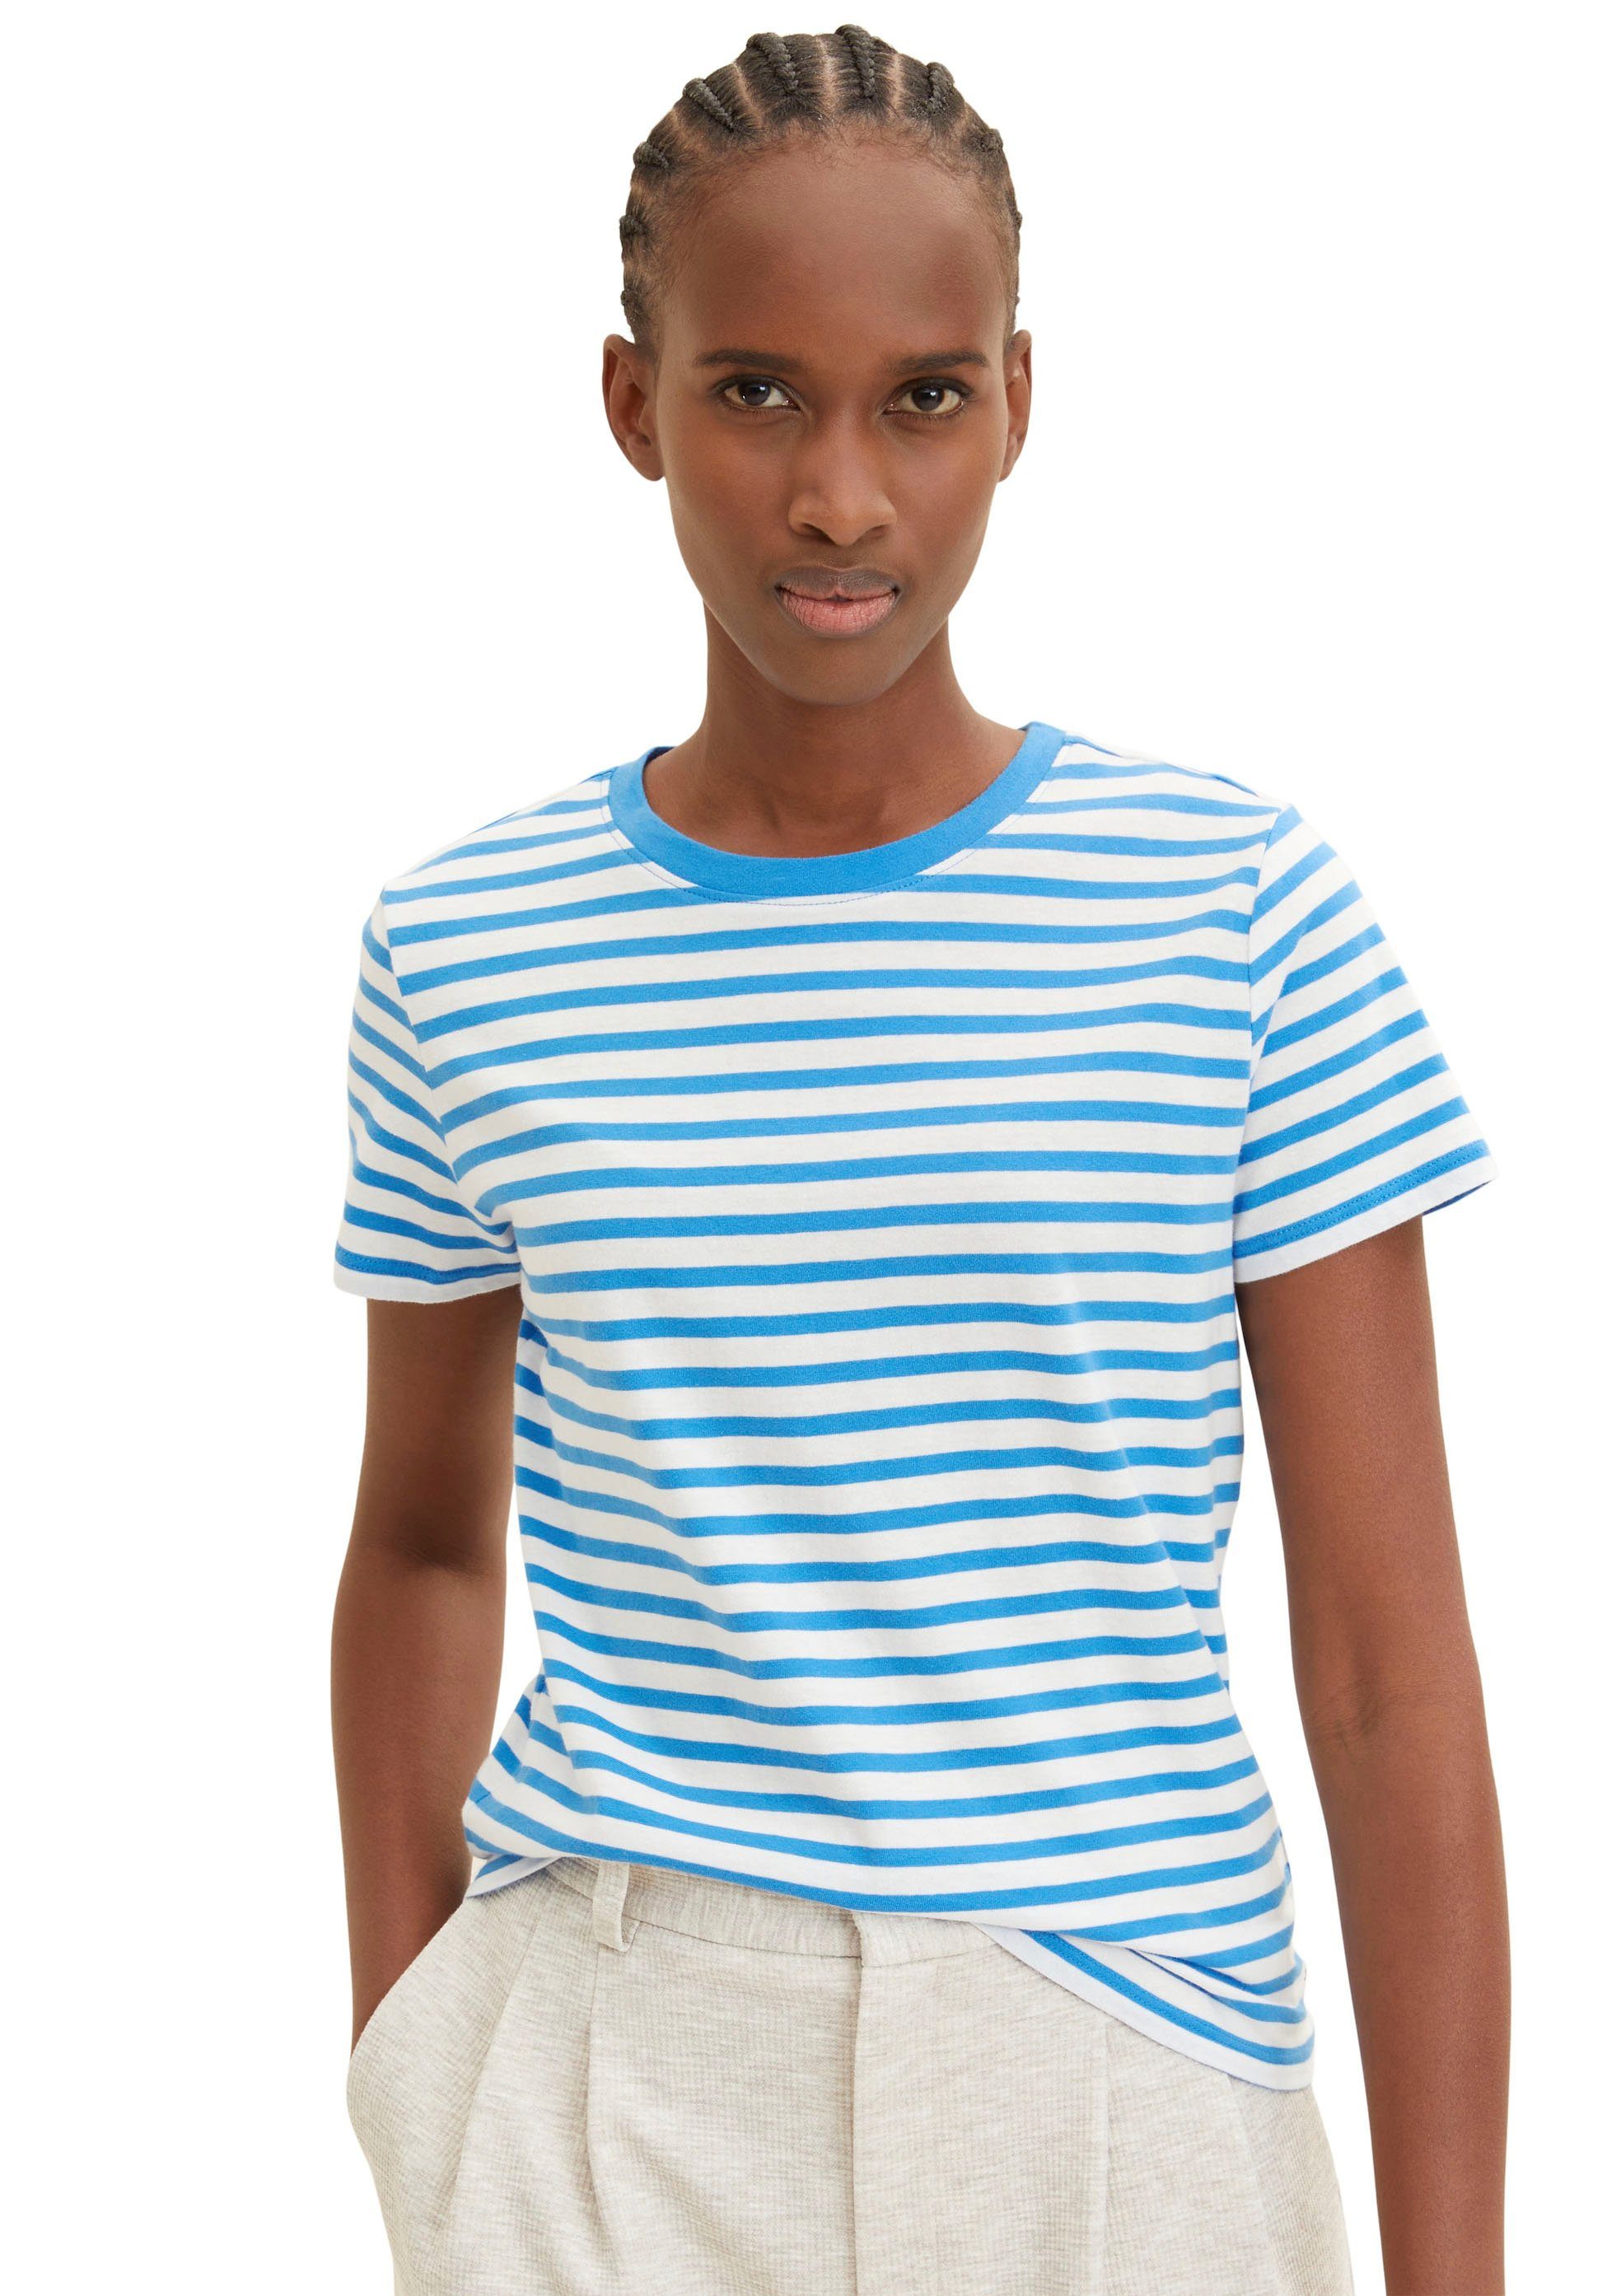 TOM TAILOR Denim T-Shirt geringelt white mid blue stripe